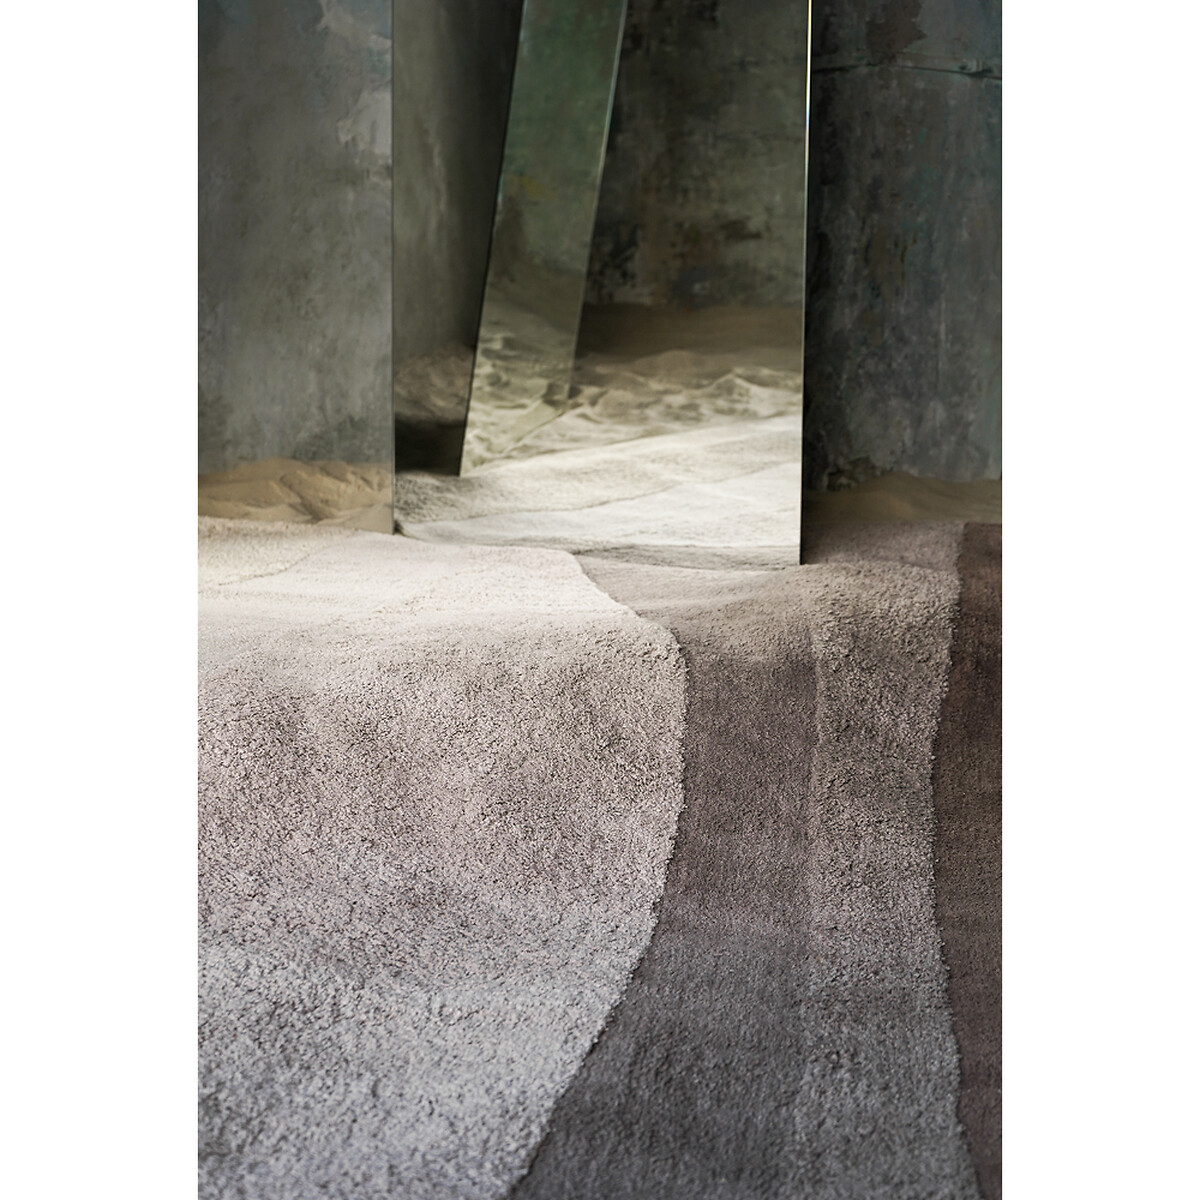 Ковер Из хлопка с рисунком Rice plantation 200 x 300 см бежевый LaRedoute, размер 200 x 300 см - фото 5